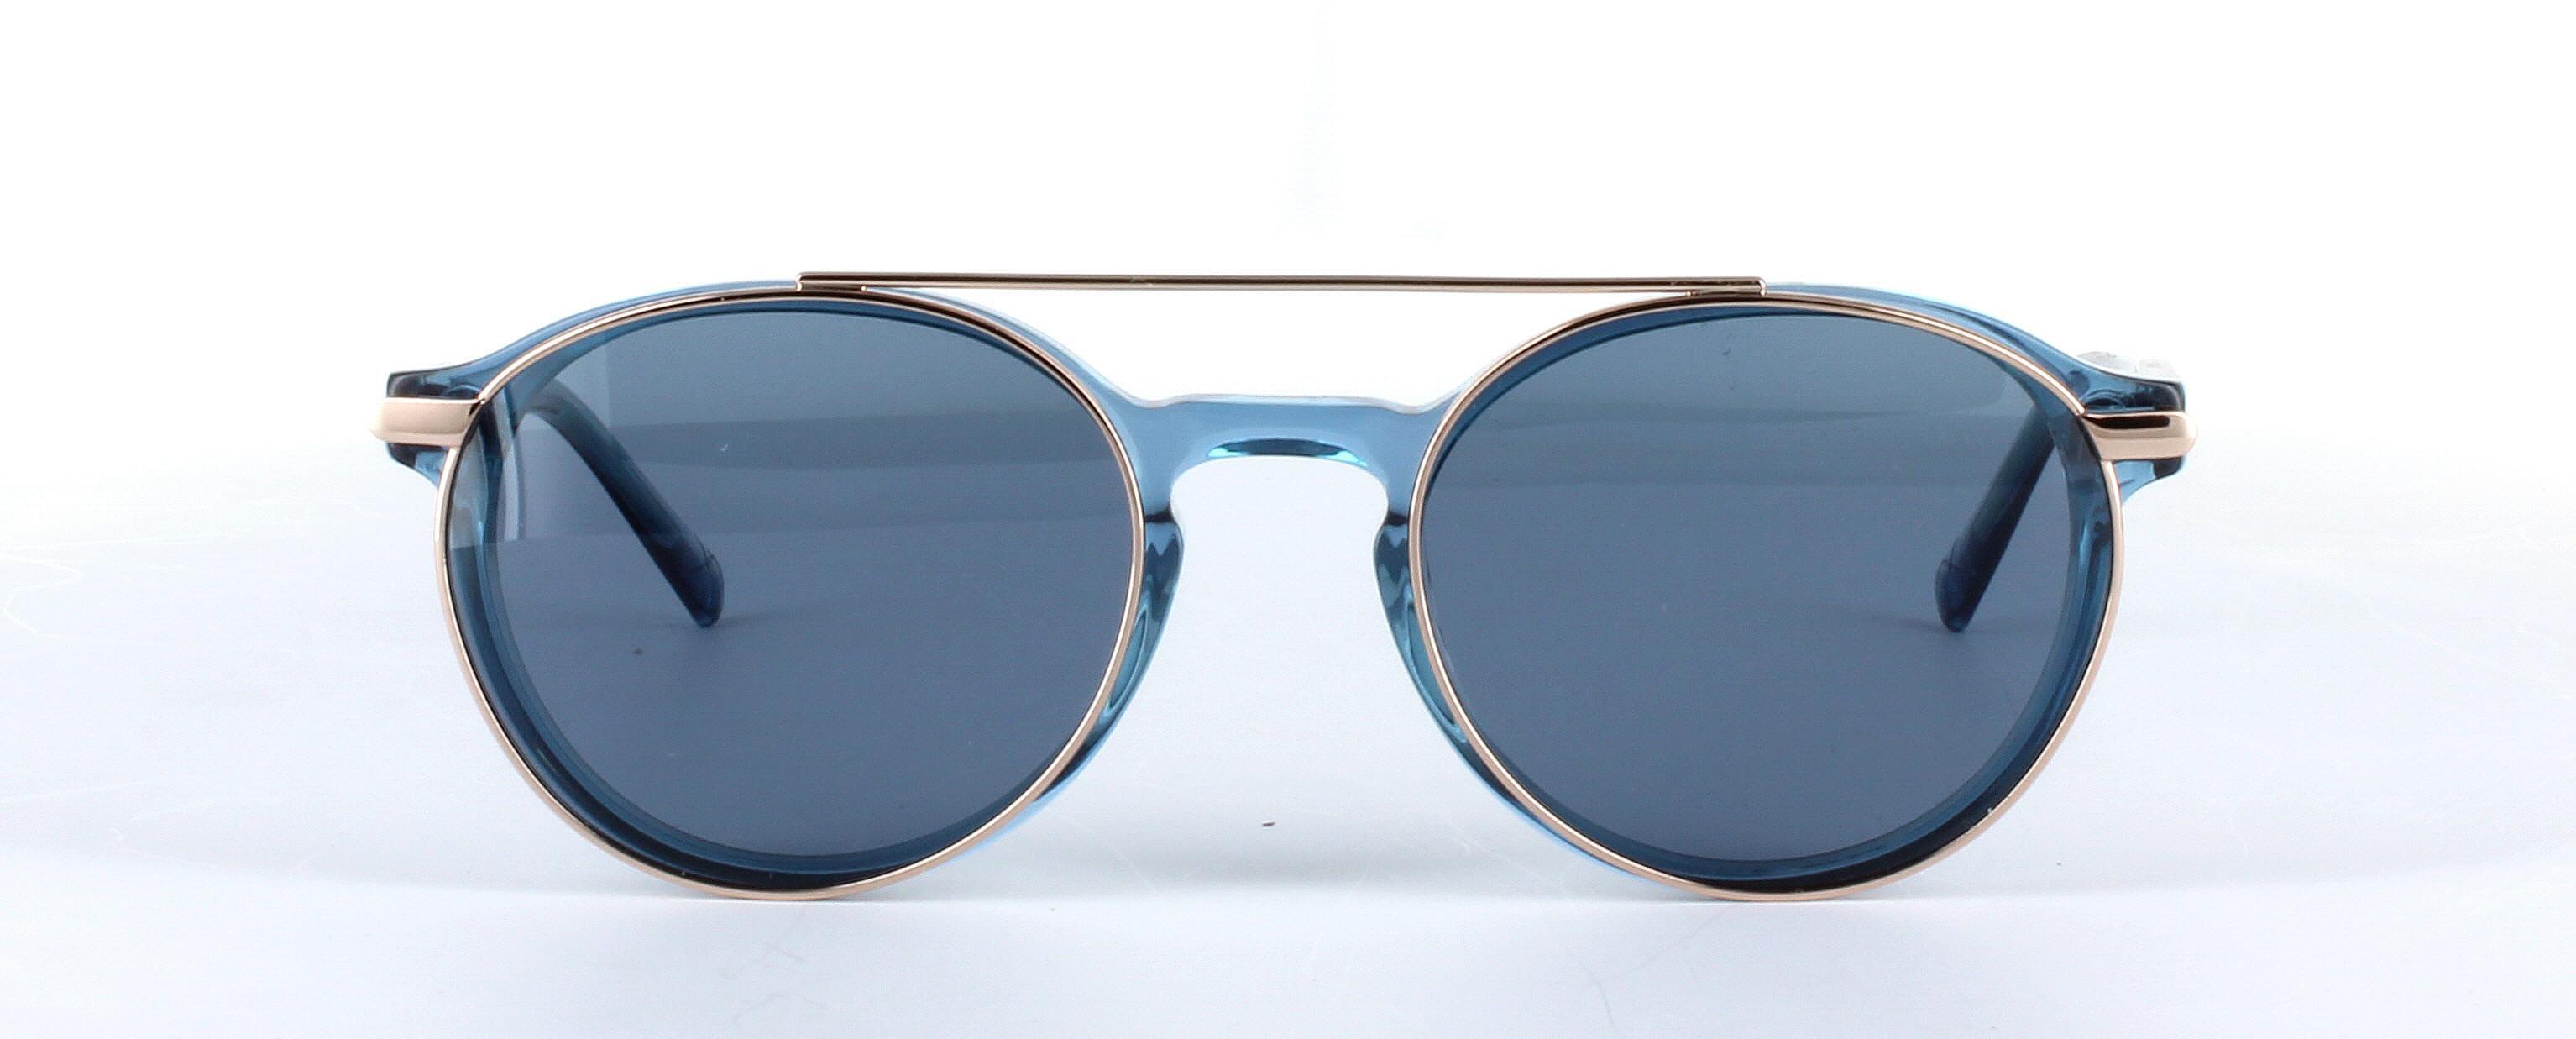 Eyecroxx 621 Blue Full Rim Round Acetate Glasses - Image View 2